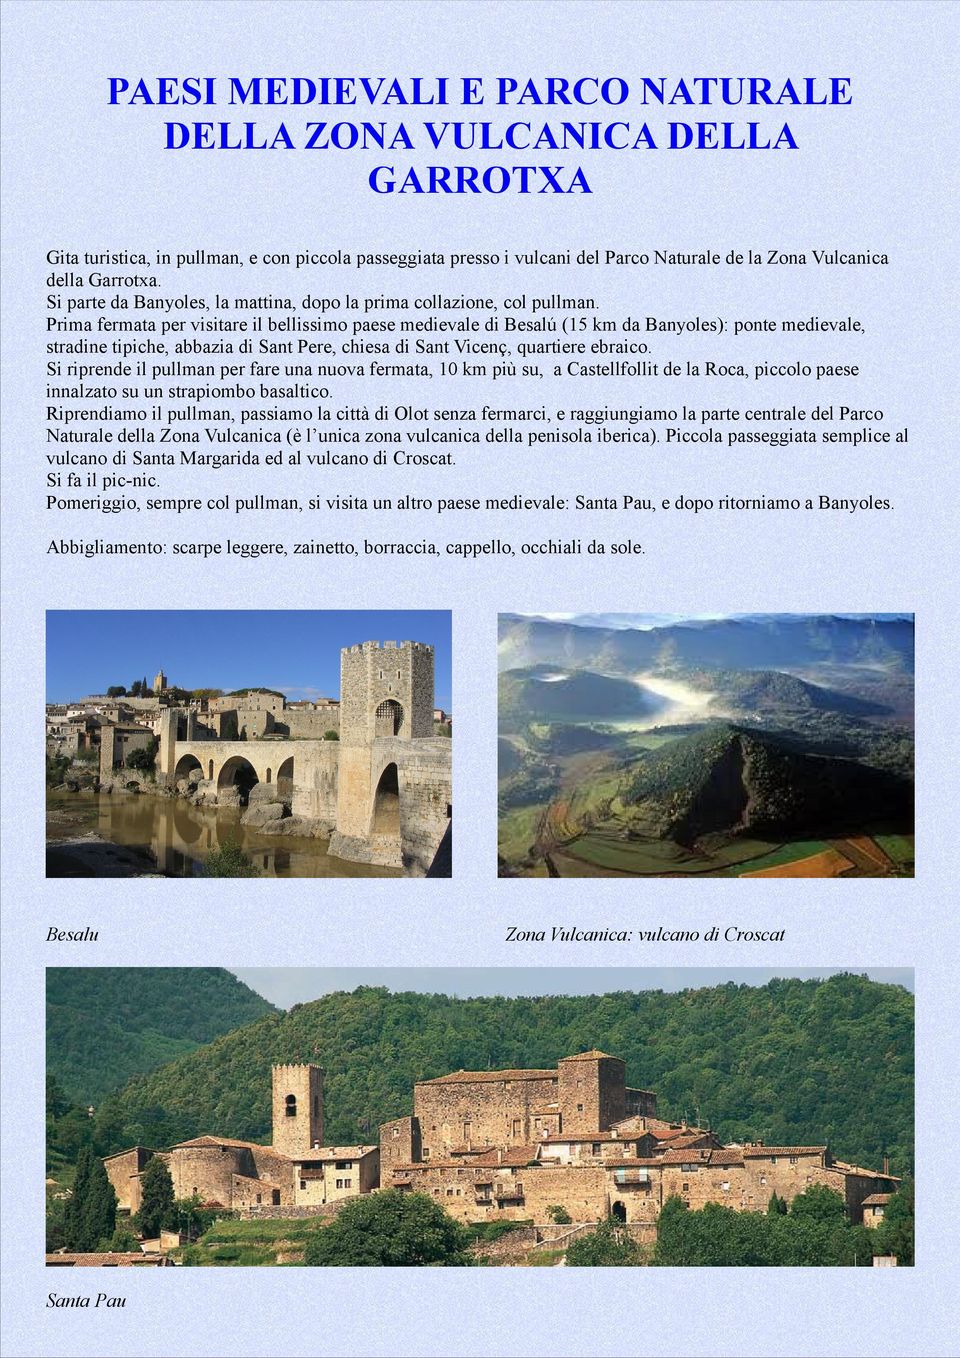 Prima fermata per visitare il bellissimo paese medievale di Besalú (15 km da Banyoles): ponte medievale, stradine tipiche, abbazia di Sant Pere, chiesa di Sant Vicenç, quartiere ebraico.